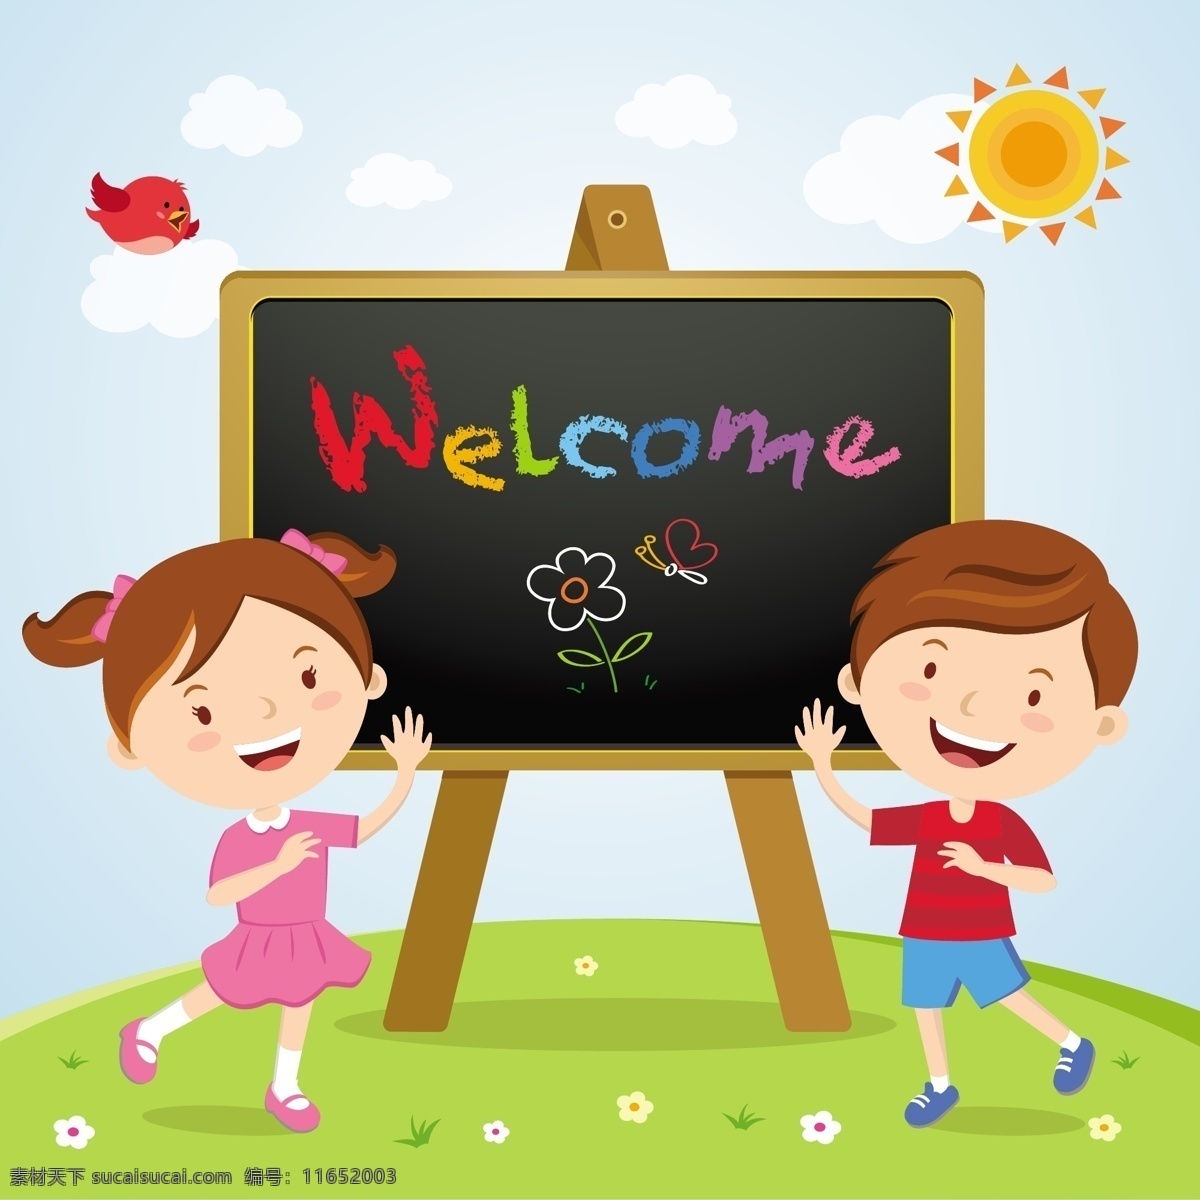 welcome 创意设计 矢量 黑板 欢迎 欢迎光临 卡通儿童 手写 英文 艺术 字体 字体设计 小学生 模板下载 欢迎字体设计 psd源文件